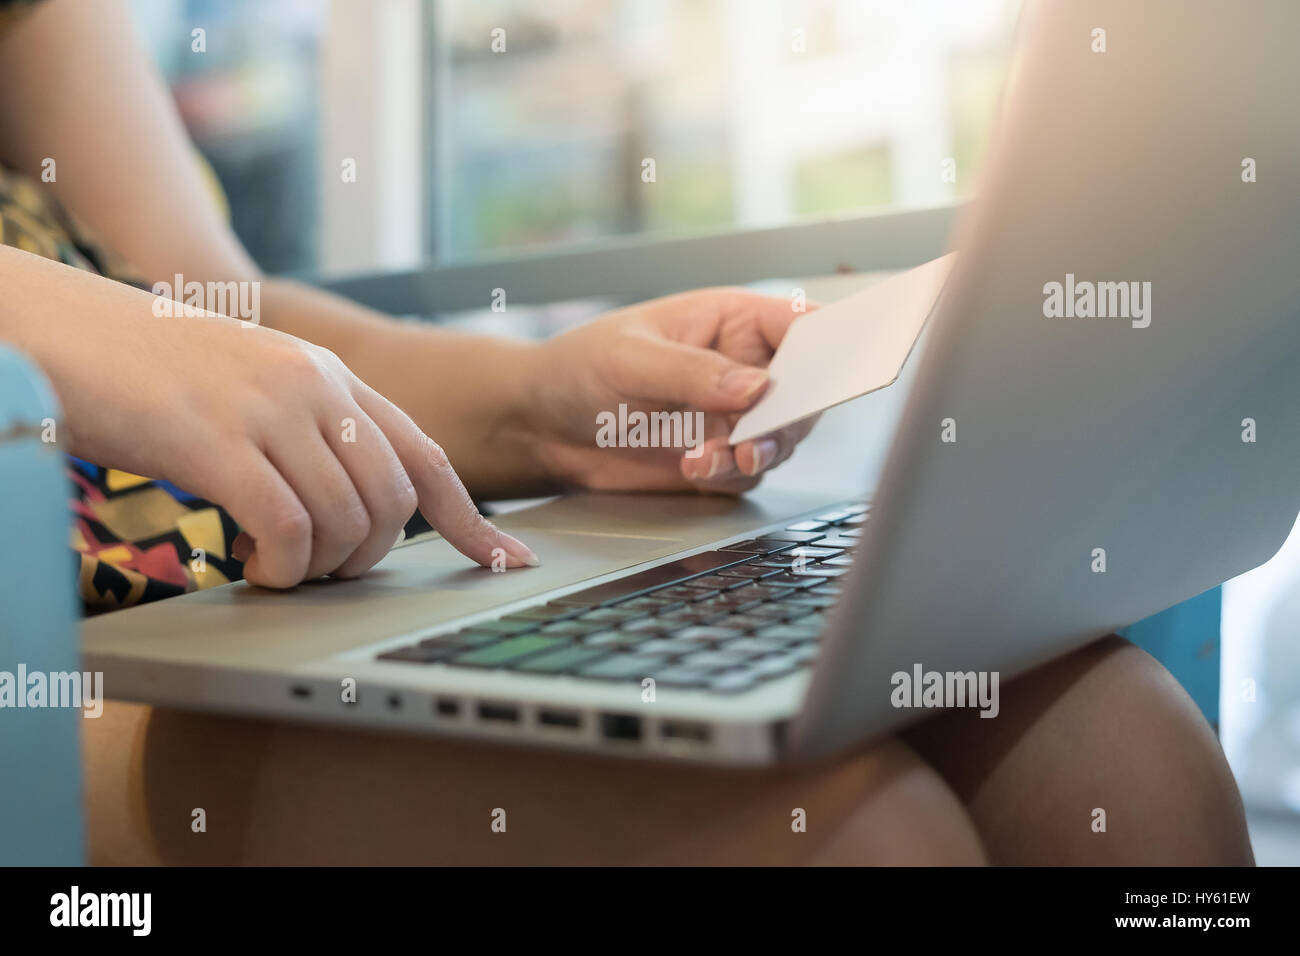 Femme l'index appuyer sur le bouton sur l'ordinateur portable pendant que l'autre main tenant une carte de crédit pour le paiement d'achats électroniques. Entreprise d'E-commerce à la maison c Banque D'Images